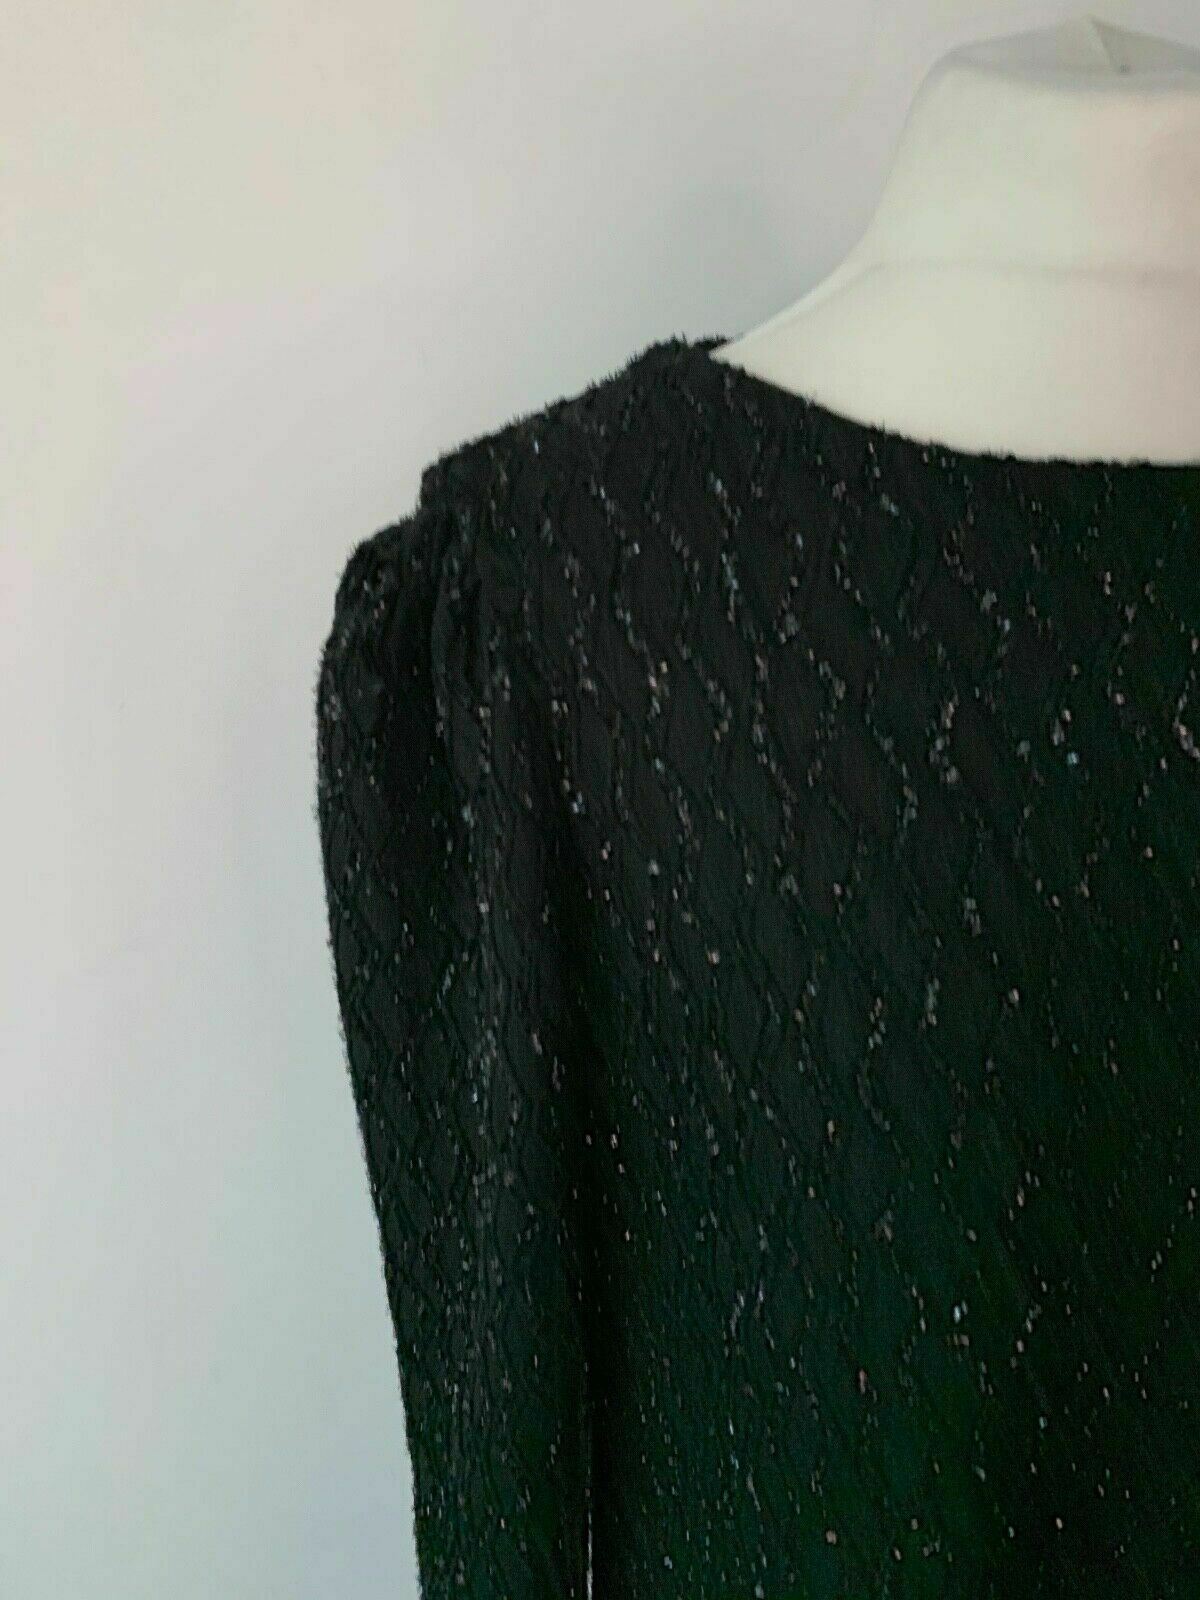 SHEIN Metallic Thread Glitter Textured Tweed Black Dress Size L 12 / 14